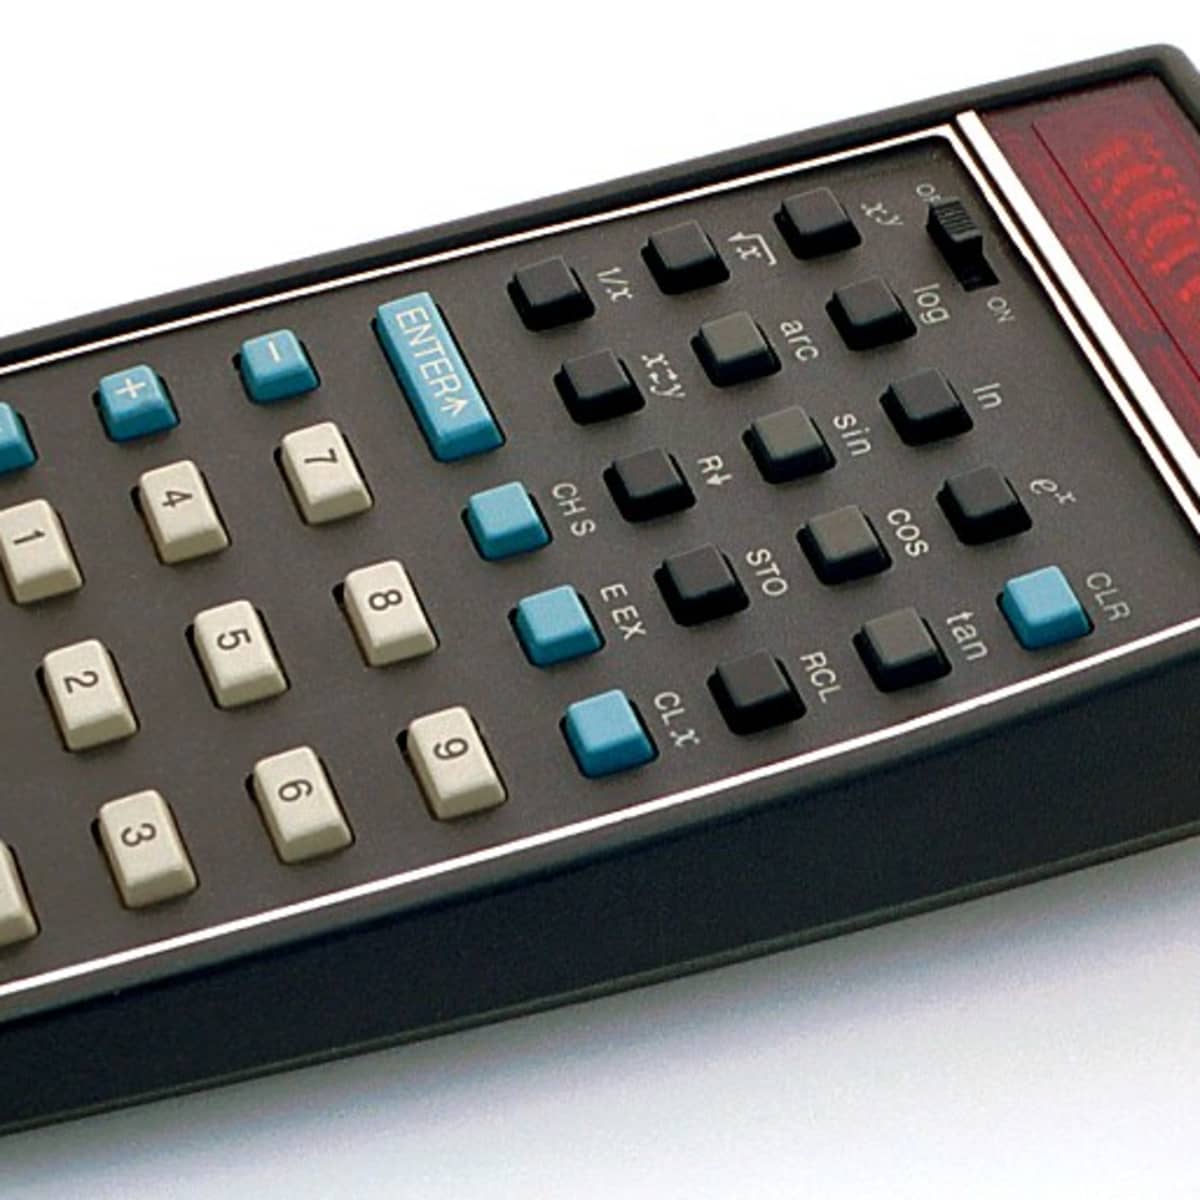 HP 15C - Scientific Programmable Calculator Collectors Edition